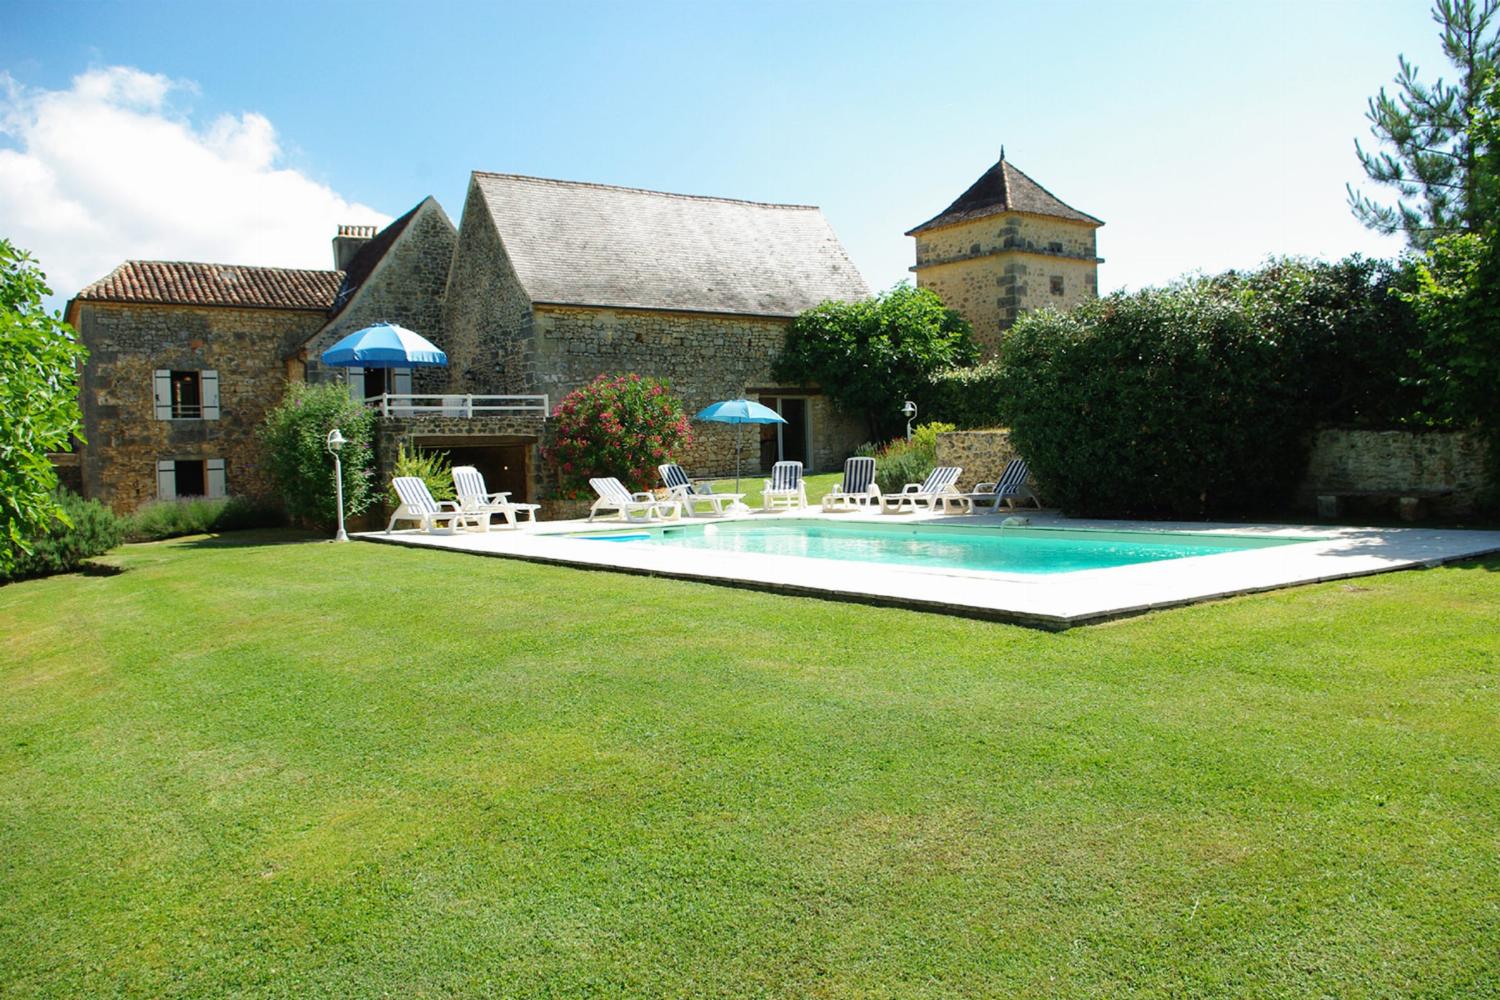 Location de vacances en Dordogne avec piscine privée